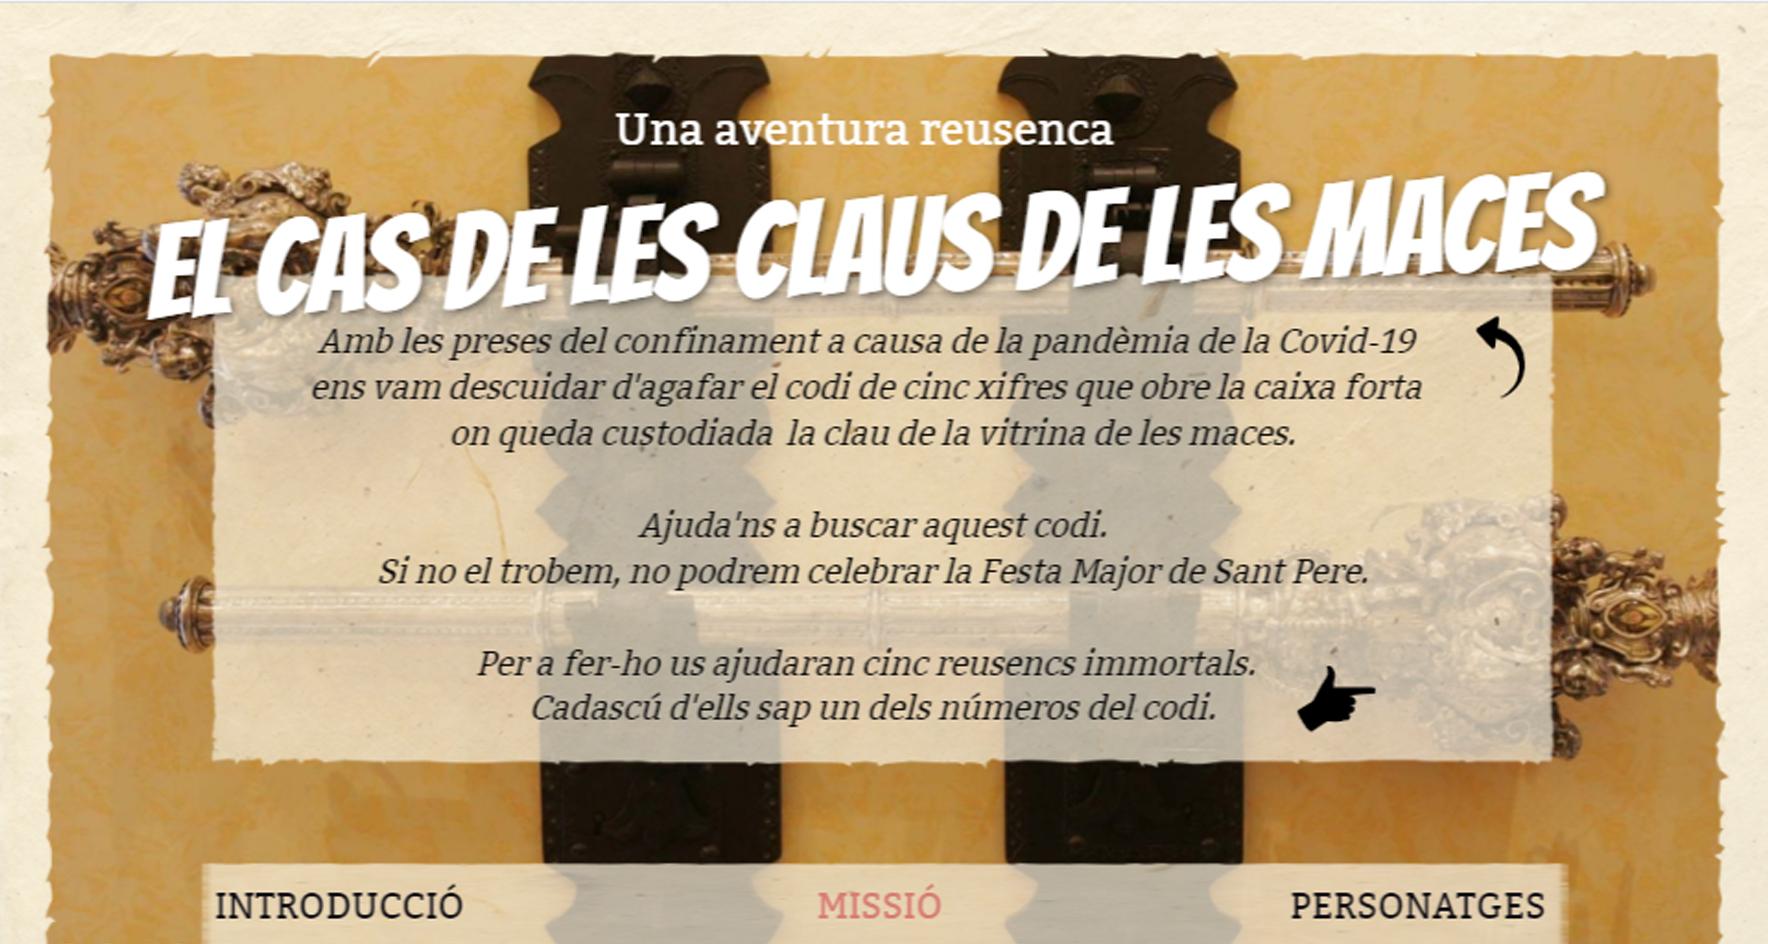 Museu de Reus: Joc en línia - Aventura reusenca